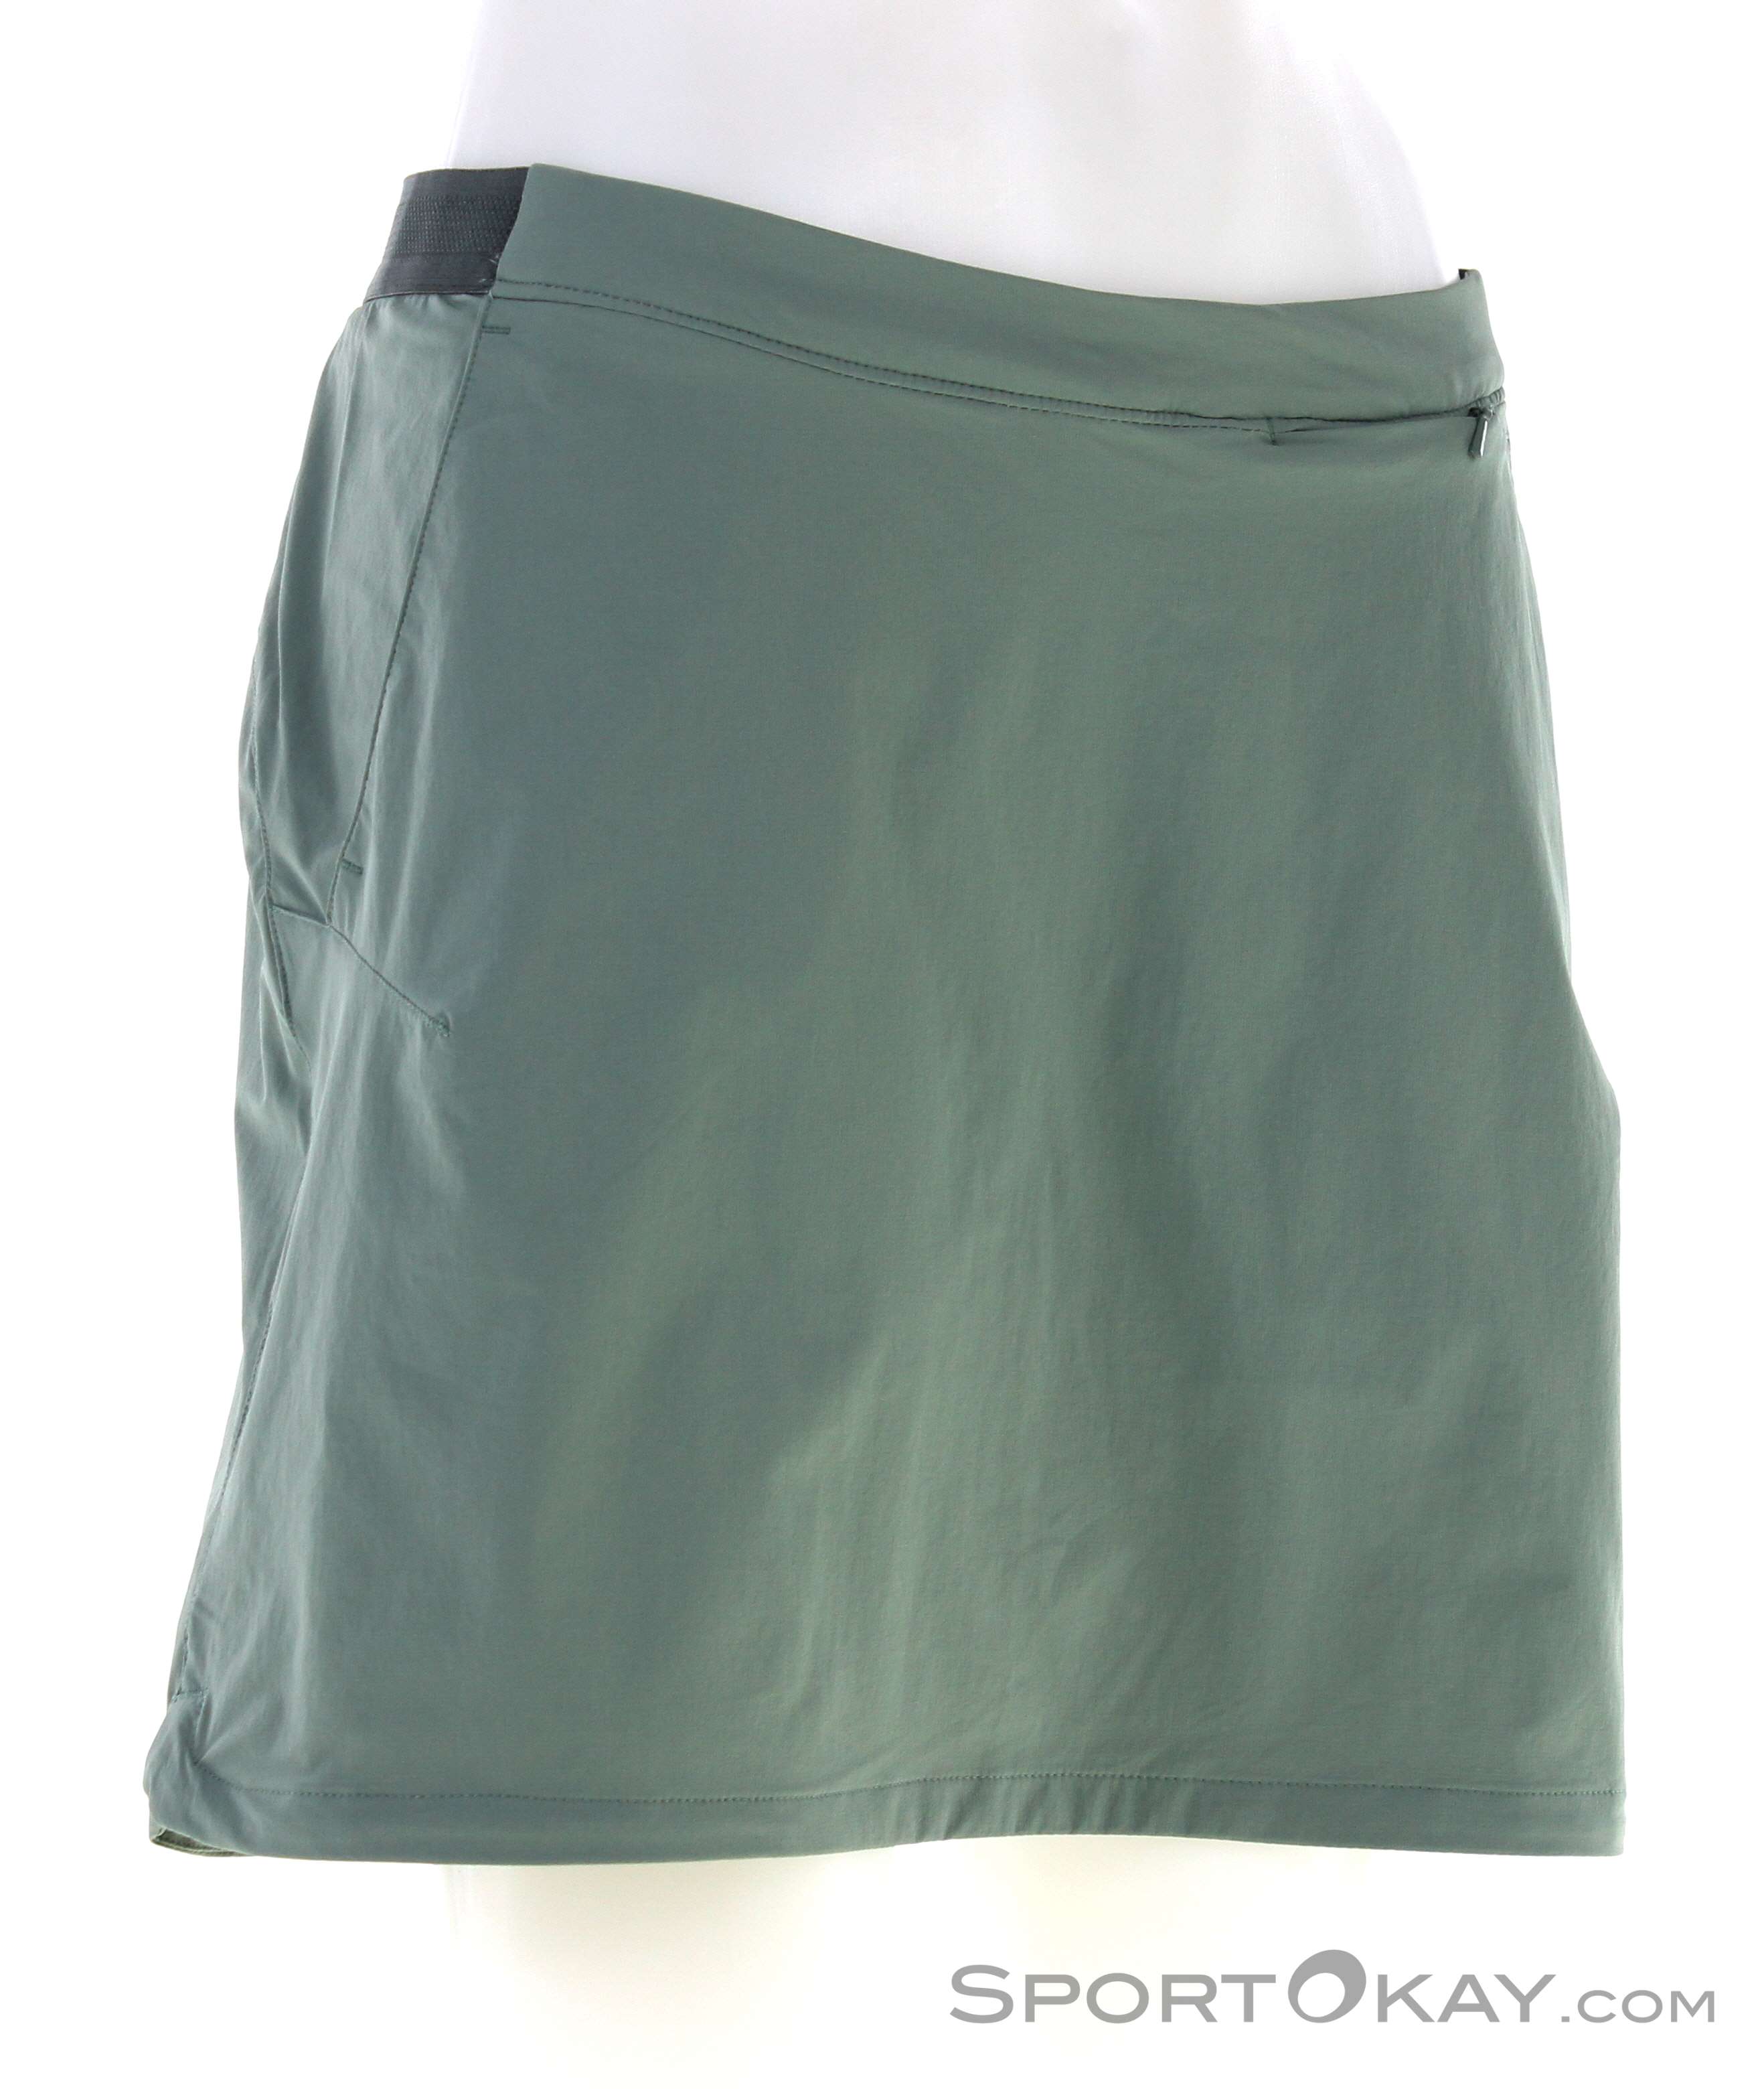 All Outdoor Skirt Clothing Skort - Hilltop - Wolfskin Trail - Women Outdoor Outdoor - Jack Pants